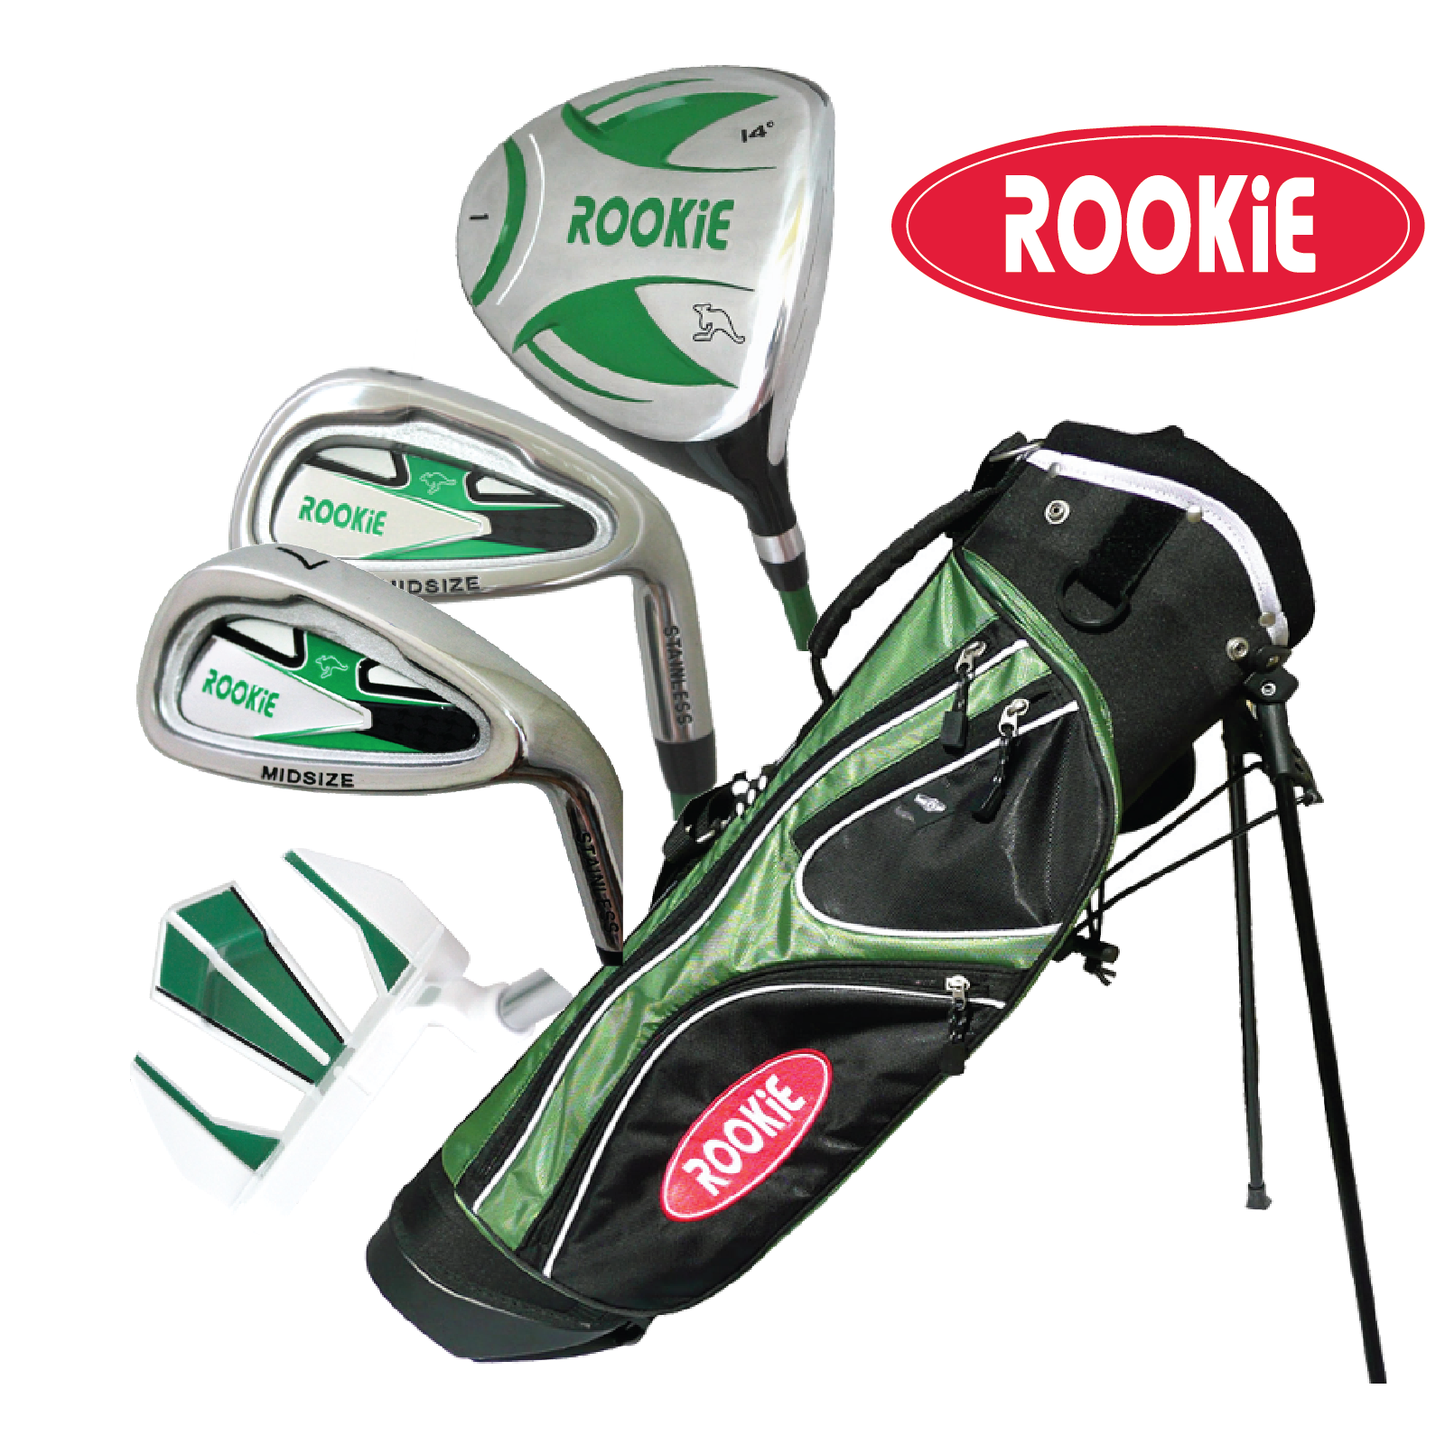 Rookie - Kids Golf Set RH - 5 Piece Green 7 to 10 YRS